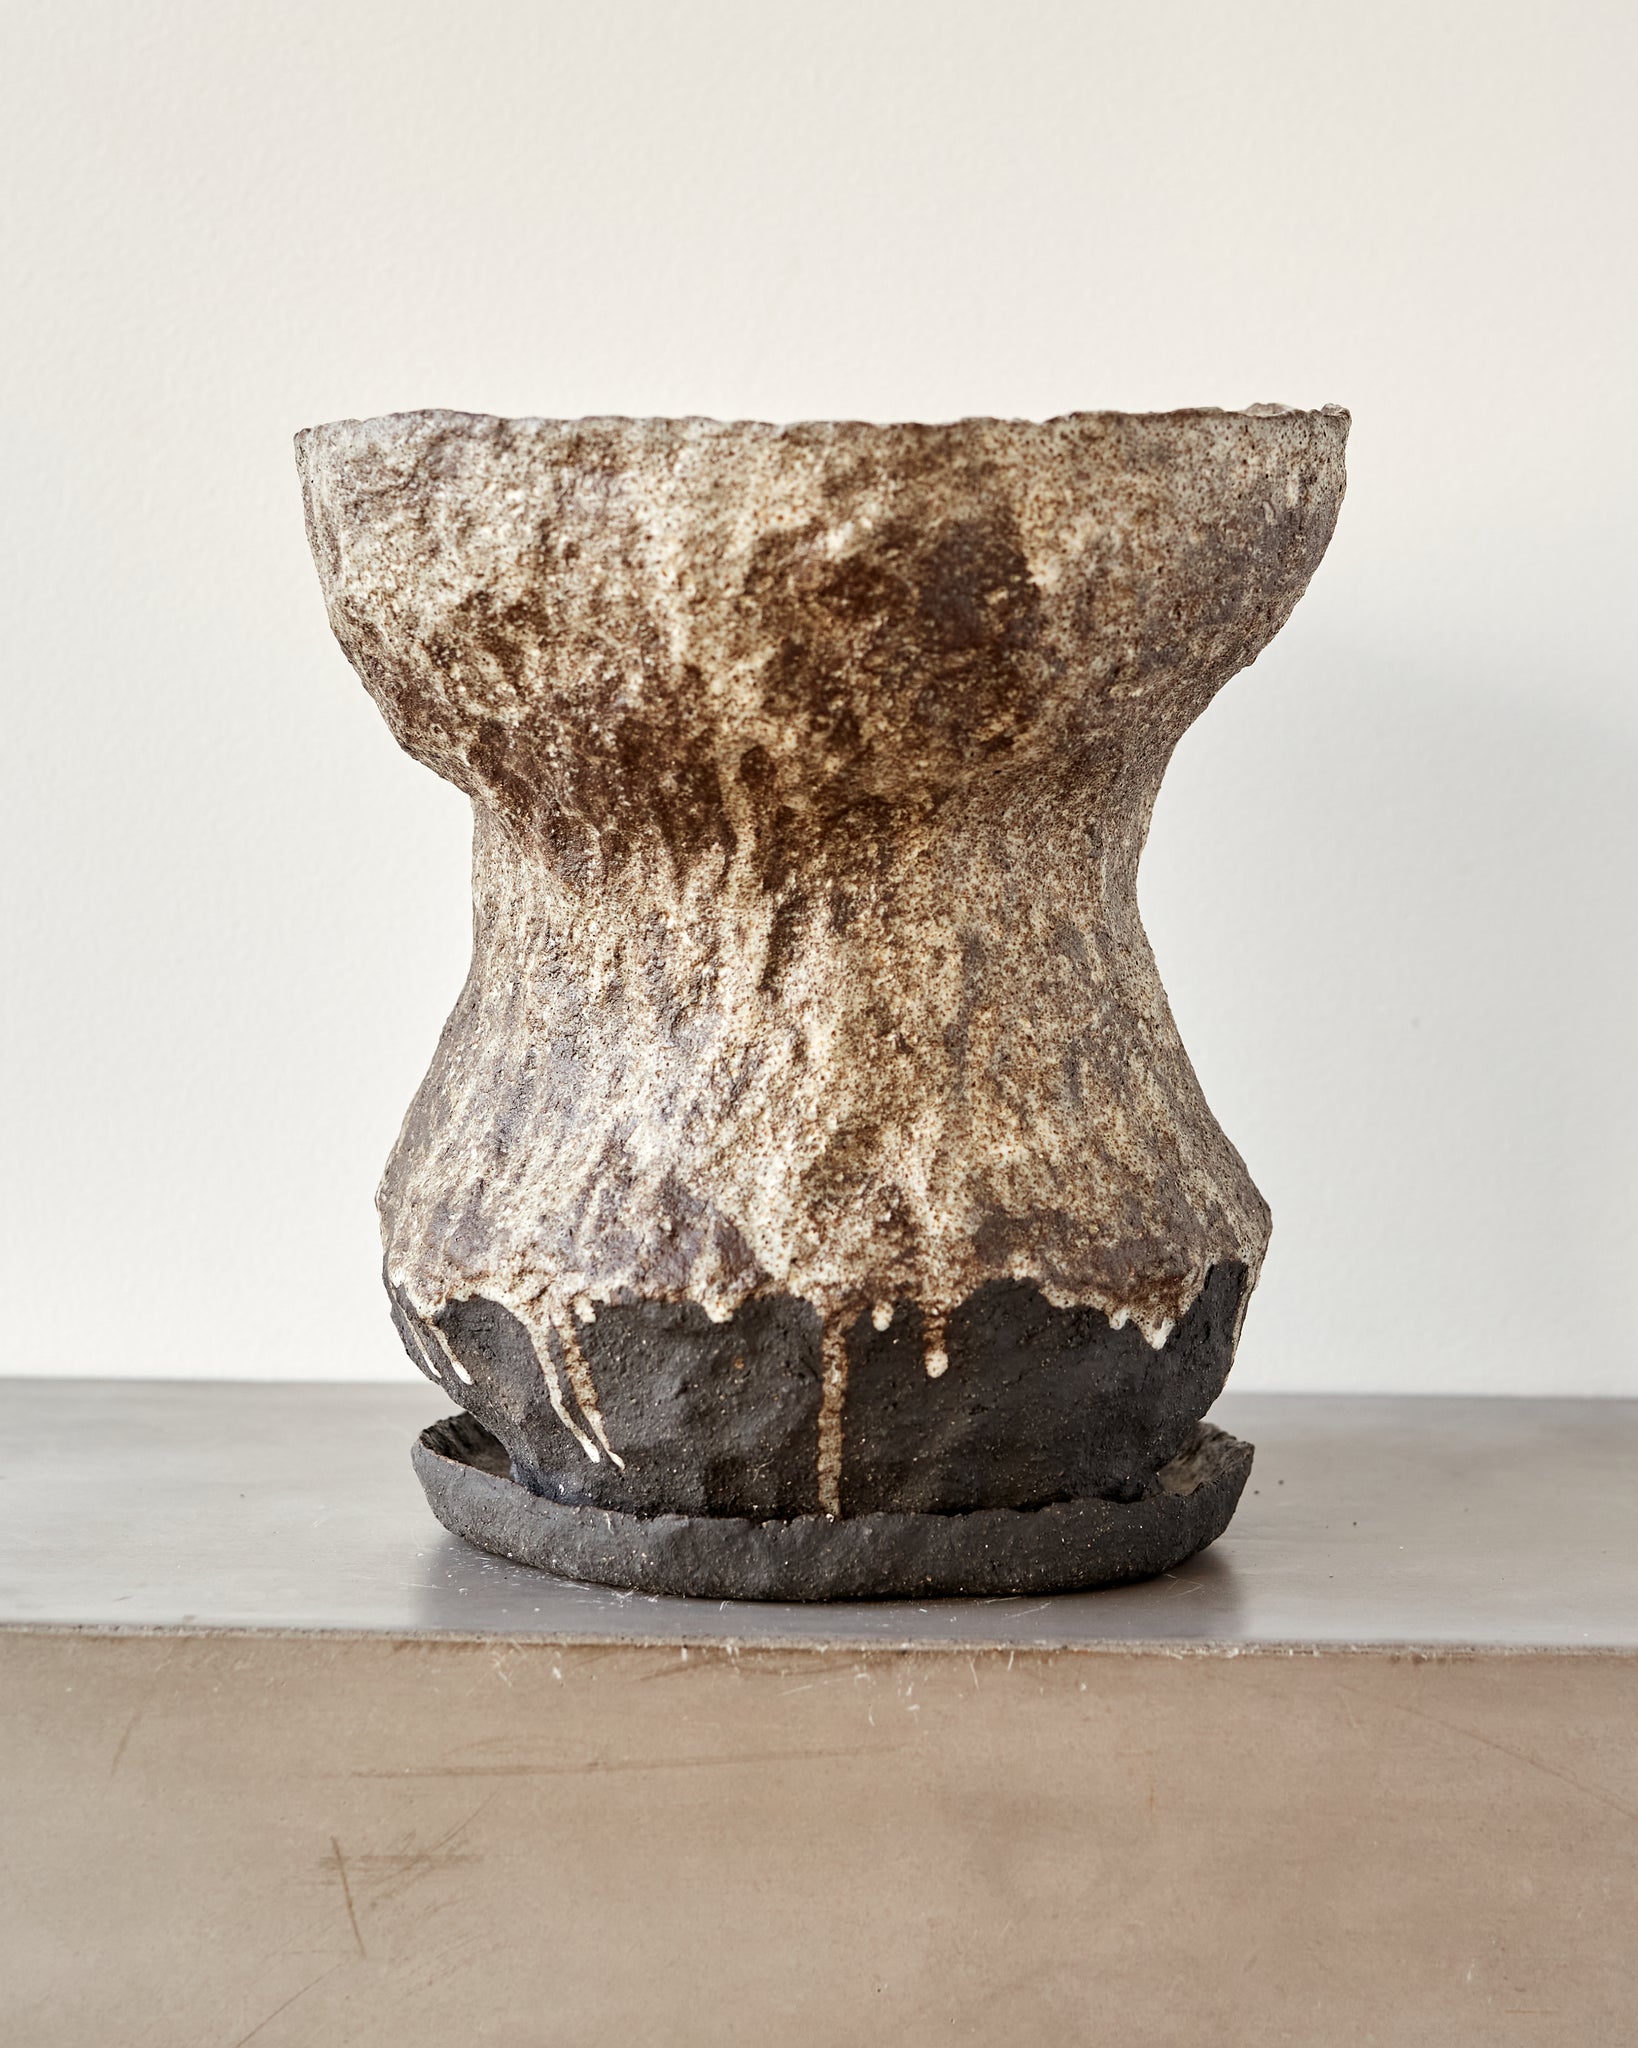 Jojo Corväiá Carved Ceramic Planter with Saucer, V-1138